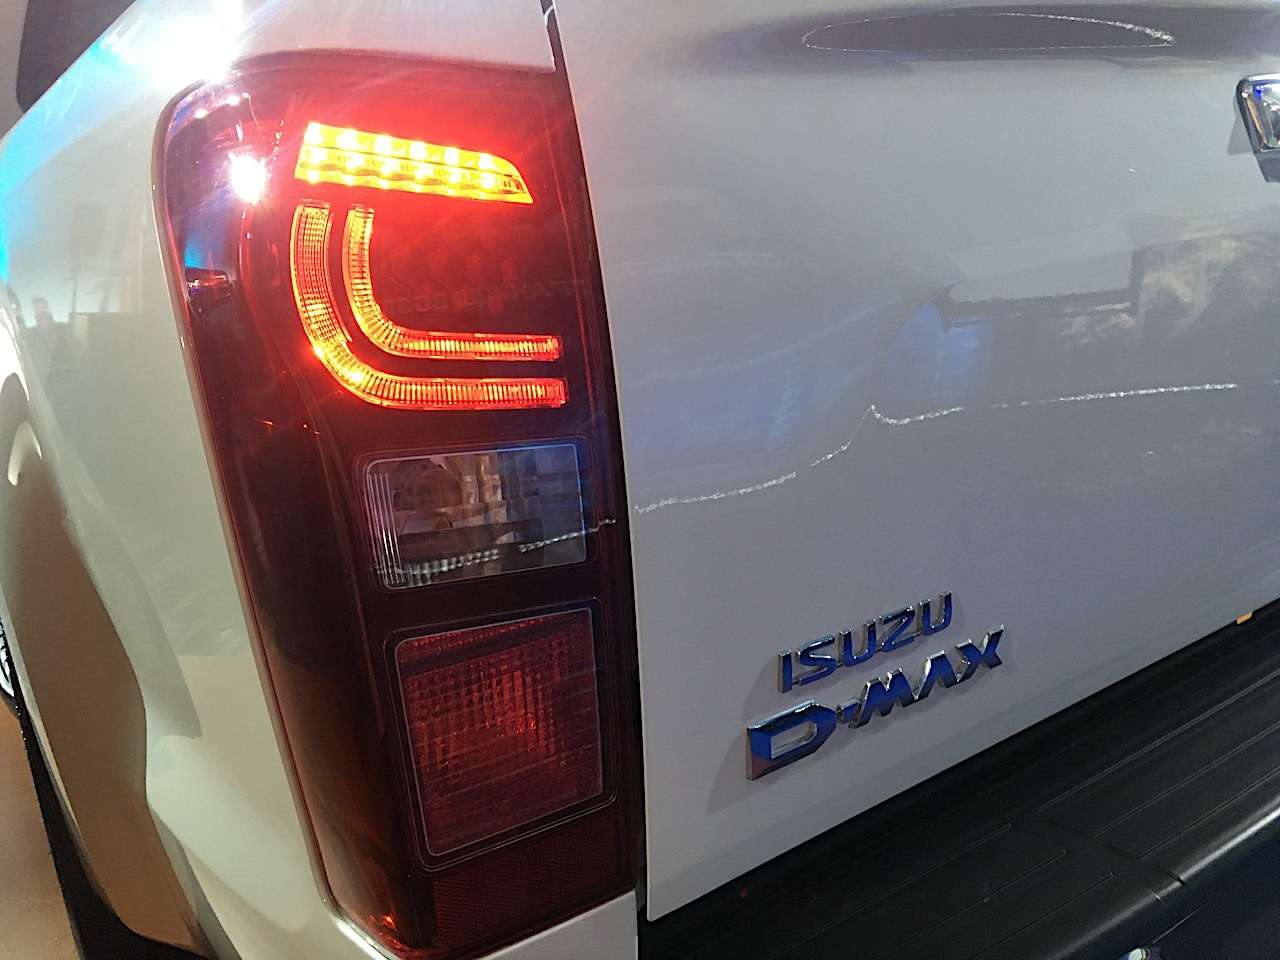 Isuzu объявила цены на обновленный пикап D-Max (спойлер — он подорожал) — фото 965189